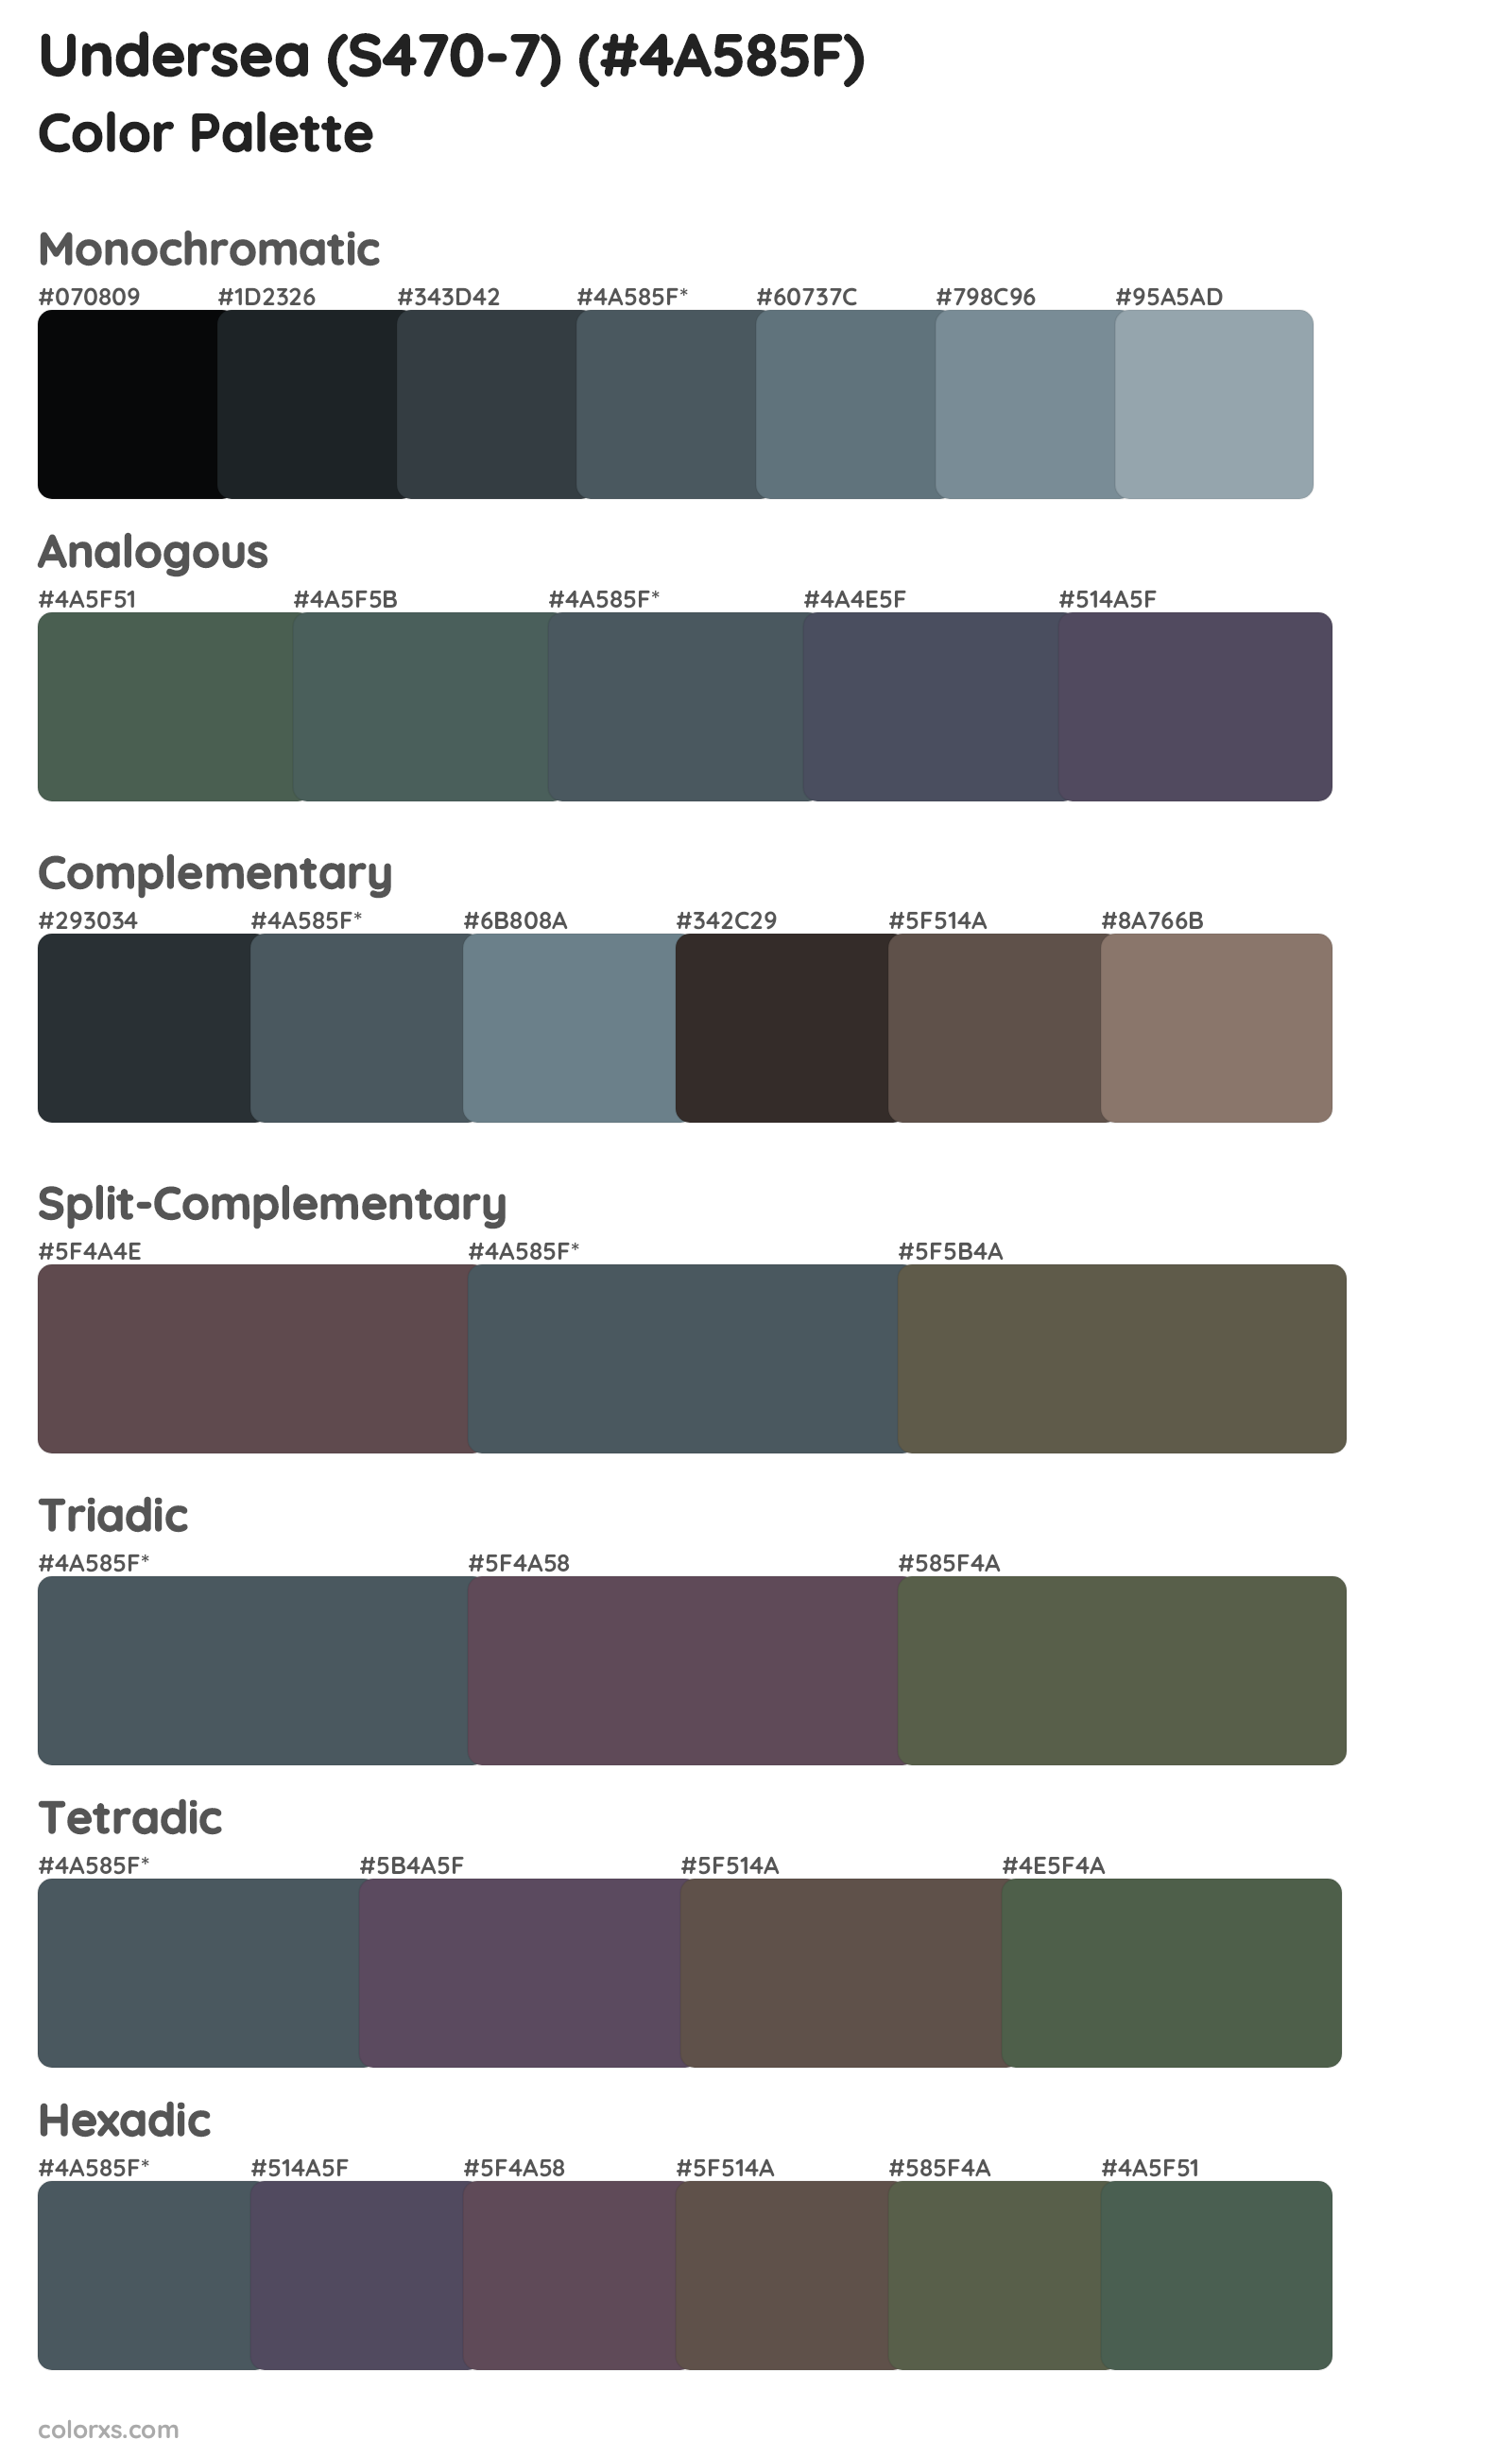 Undersea (S470-7) Color Scheme Palettes